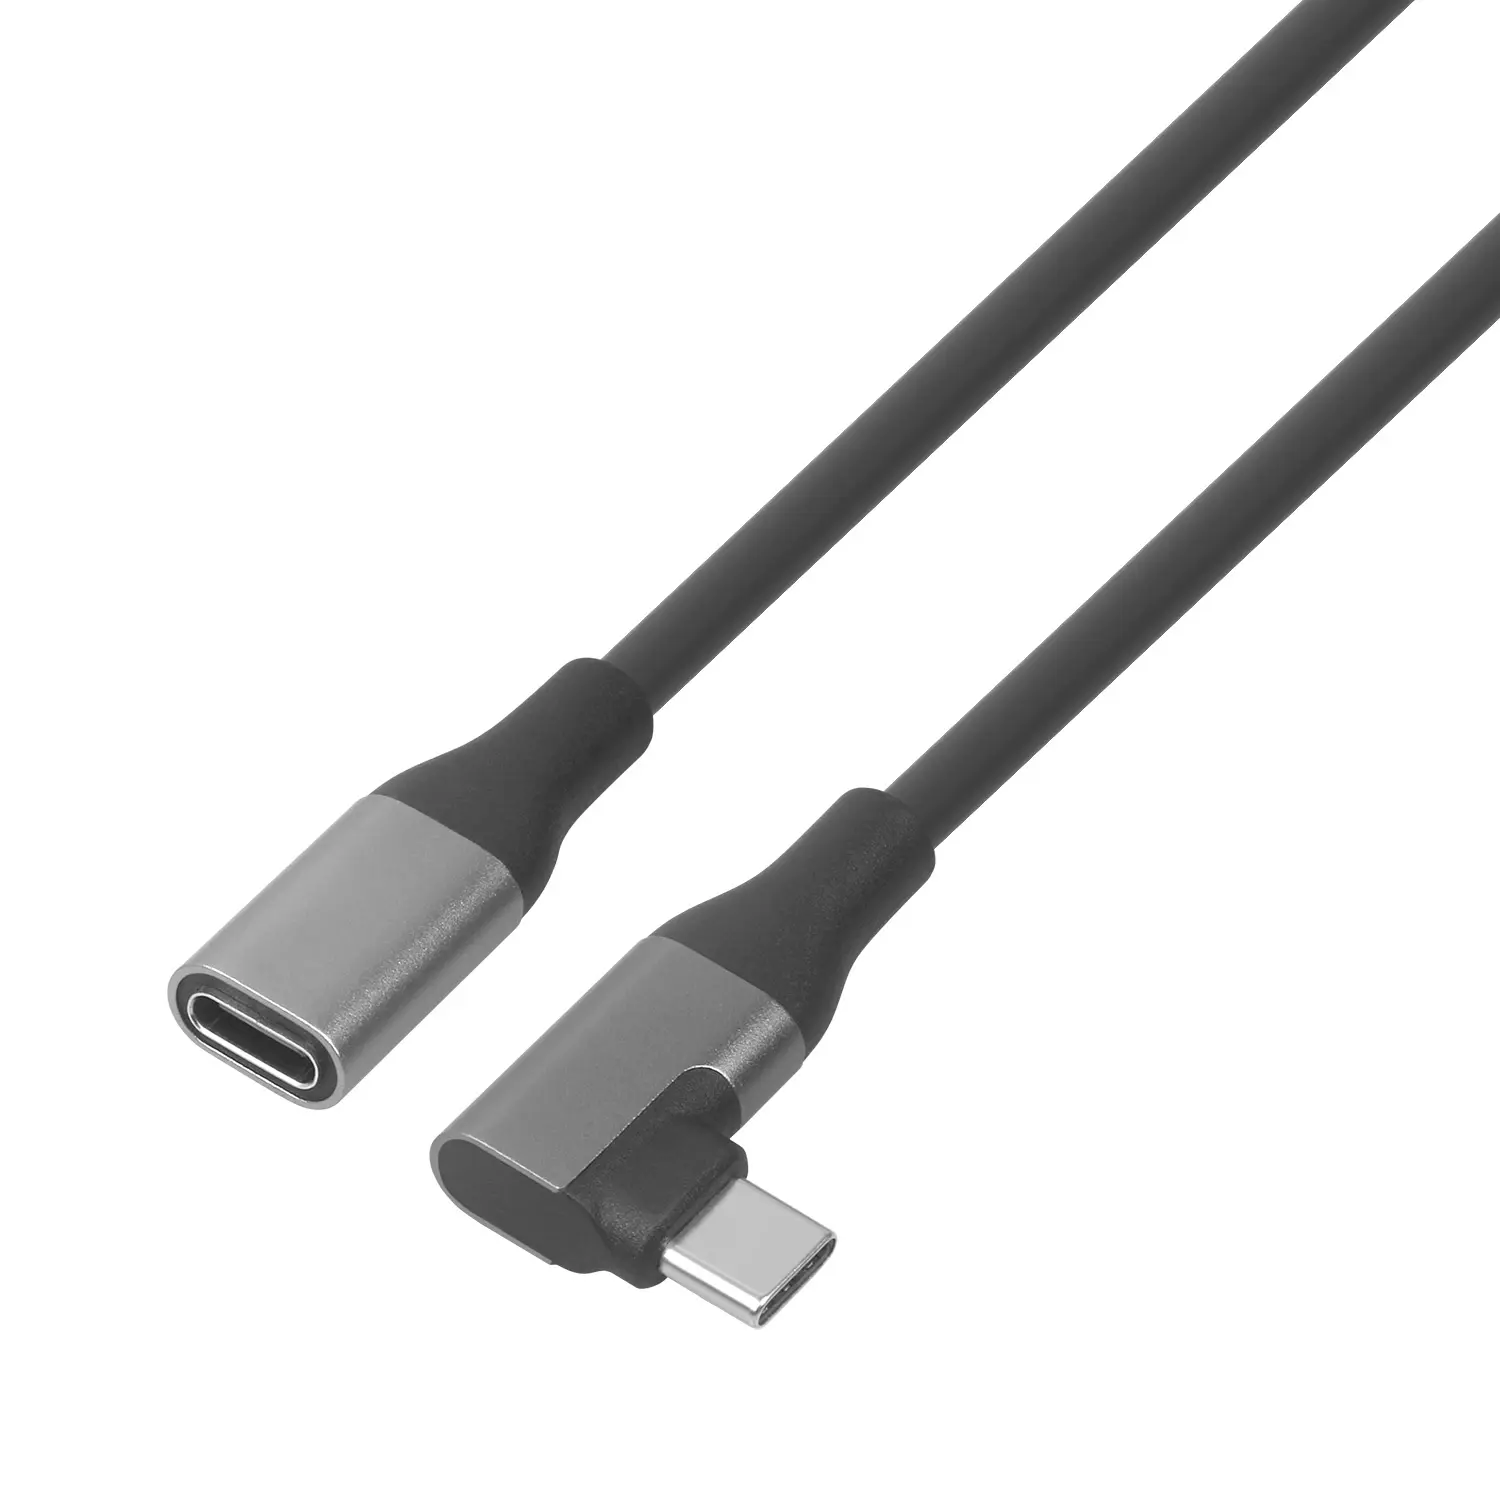 안정적인 연결을 위한 프리미엄 품질의 USB 케이블